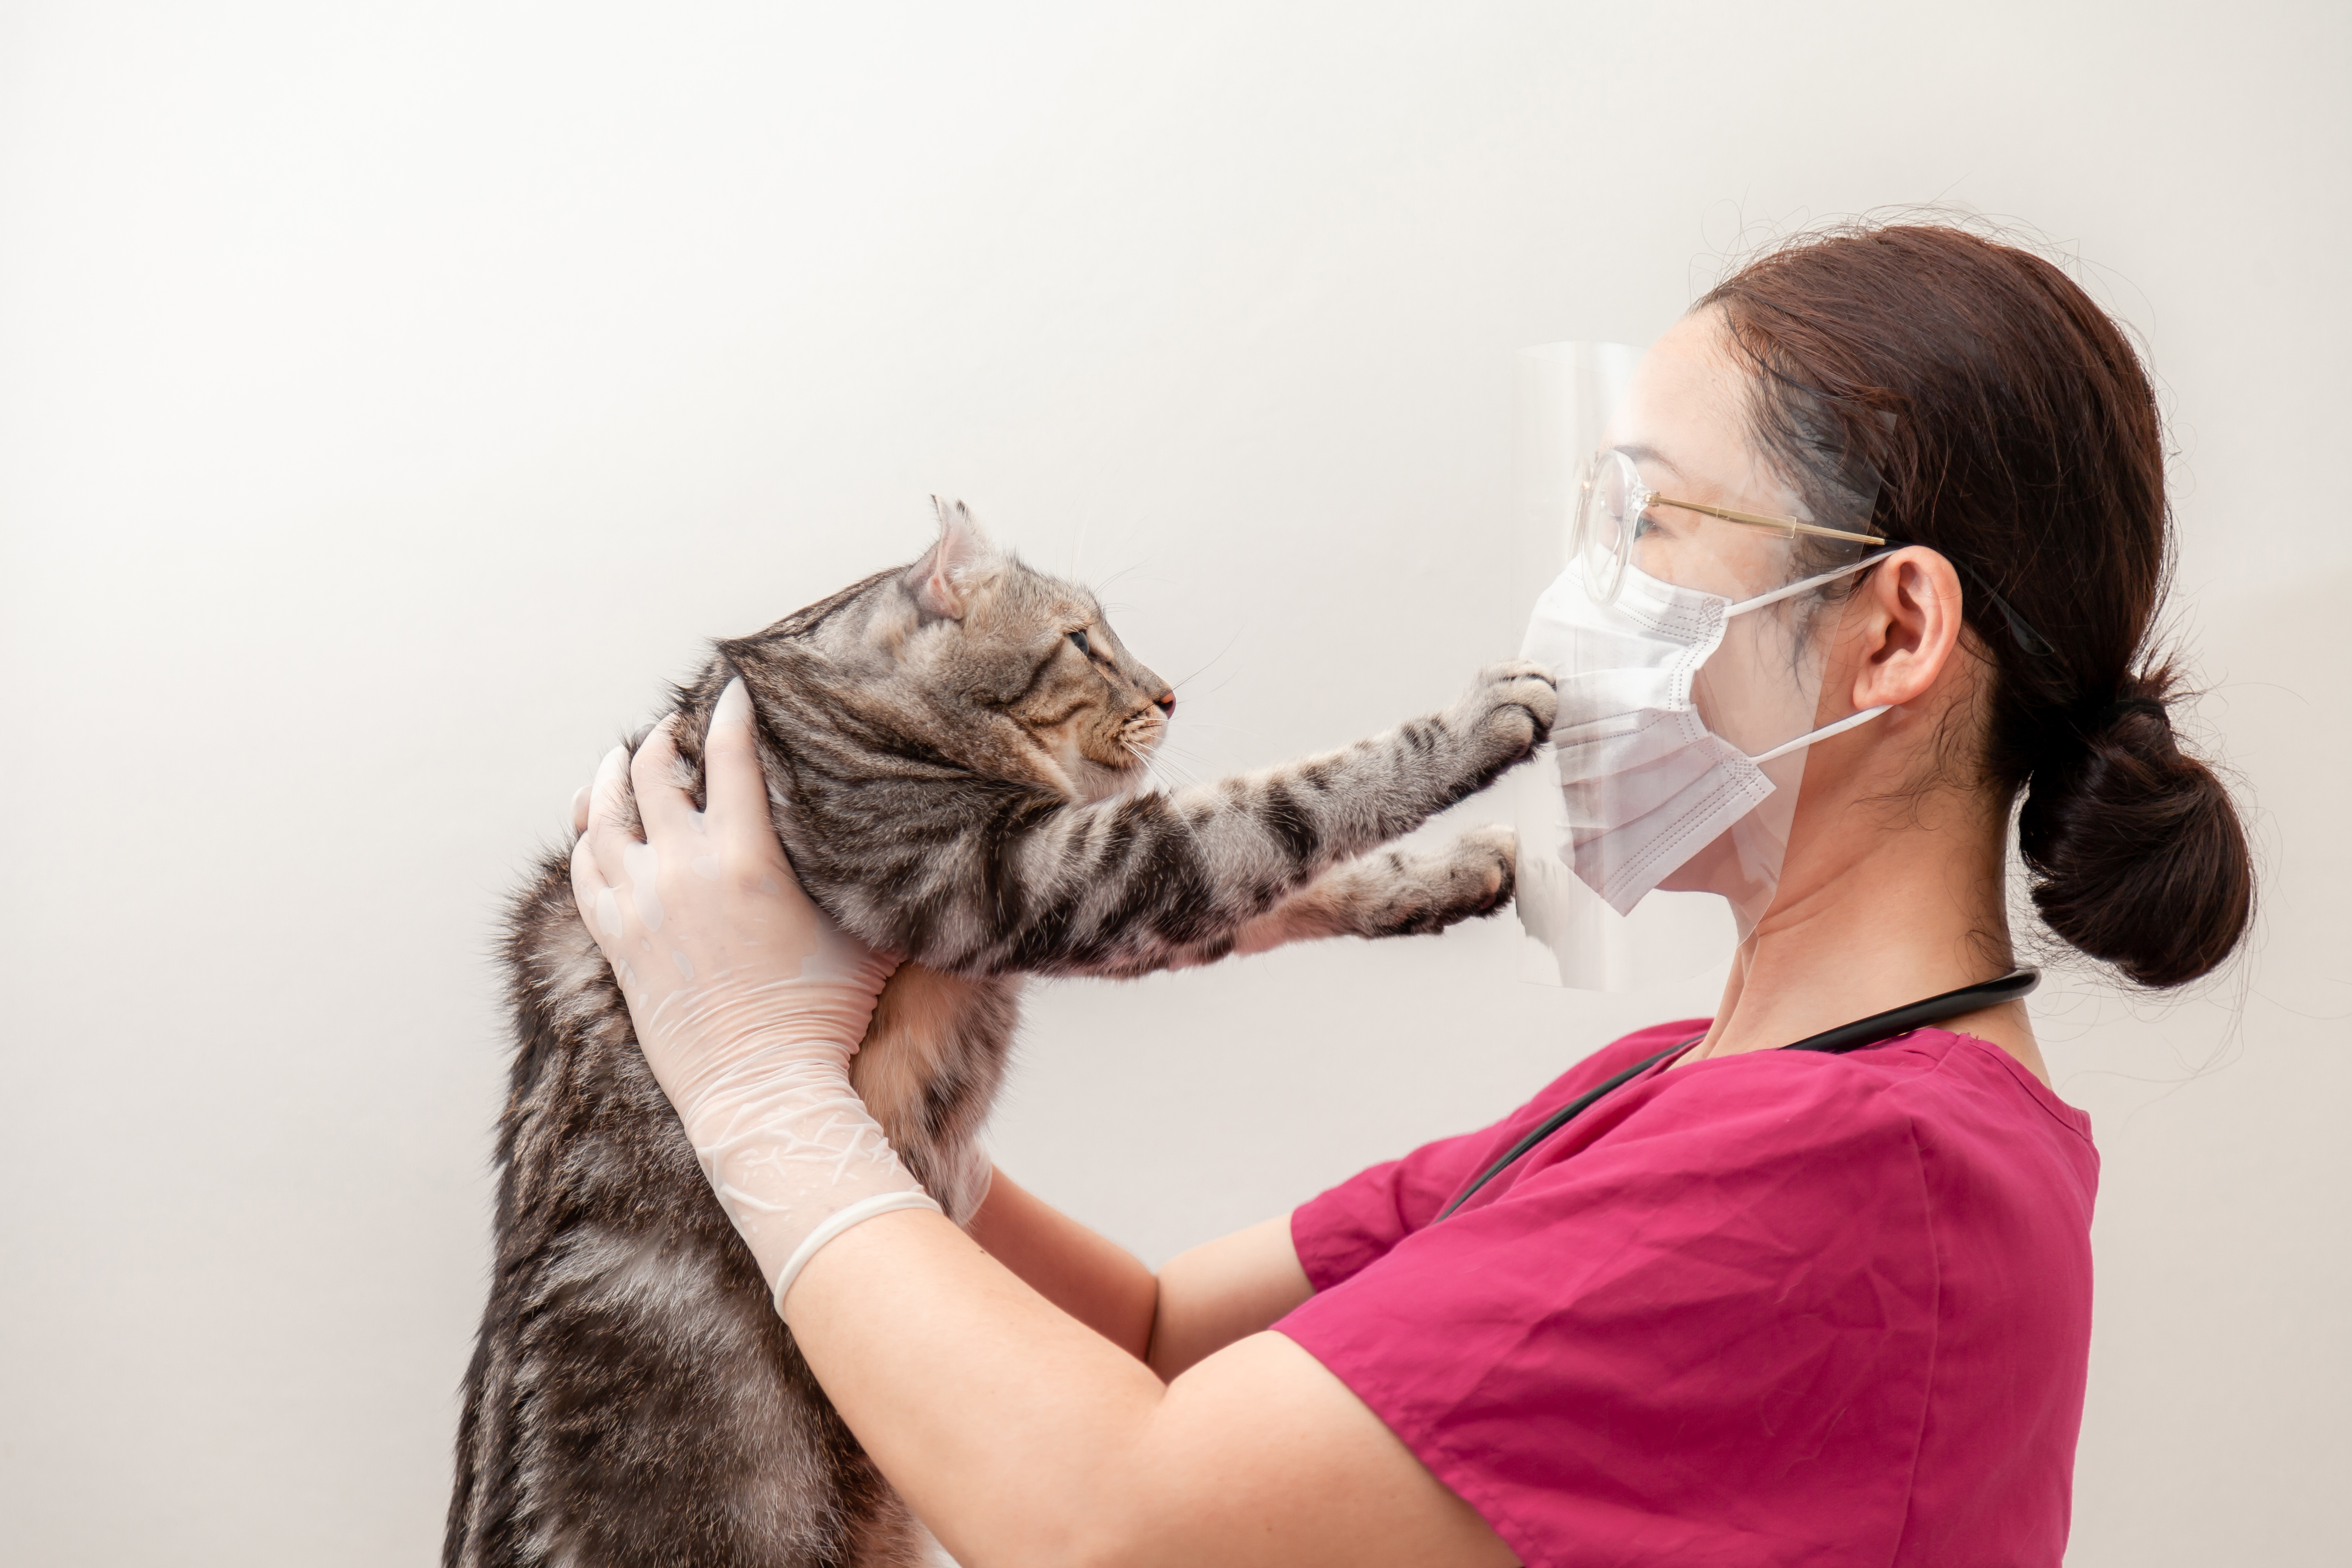 Los gatos son más susceptibles a contagiarse de Covid-19, por lo que es ideal mantener la mascarilla si usted está contagiado del virus. (Foto Prensa Libre: Shutterstock). 